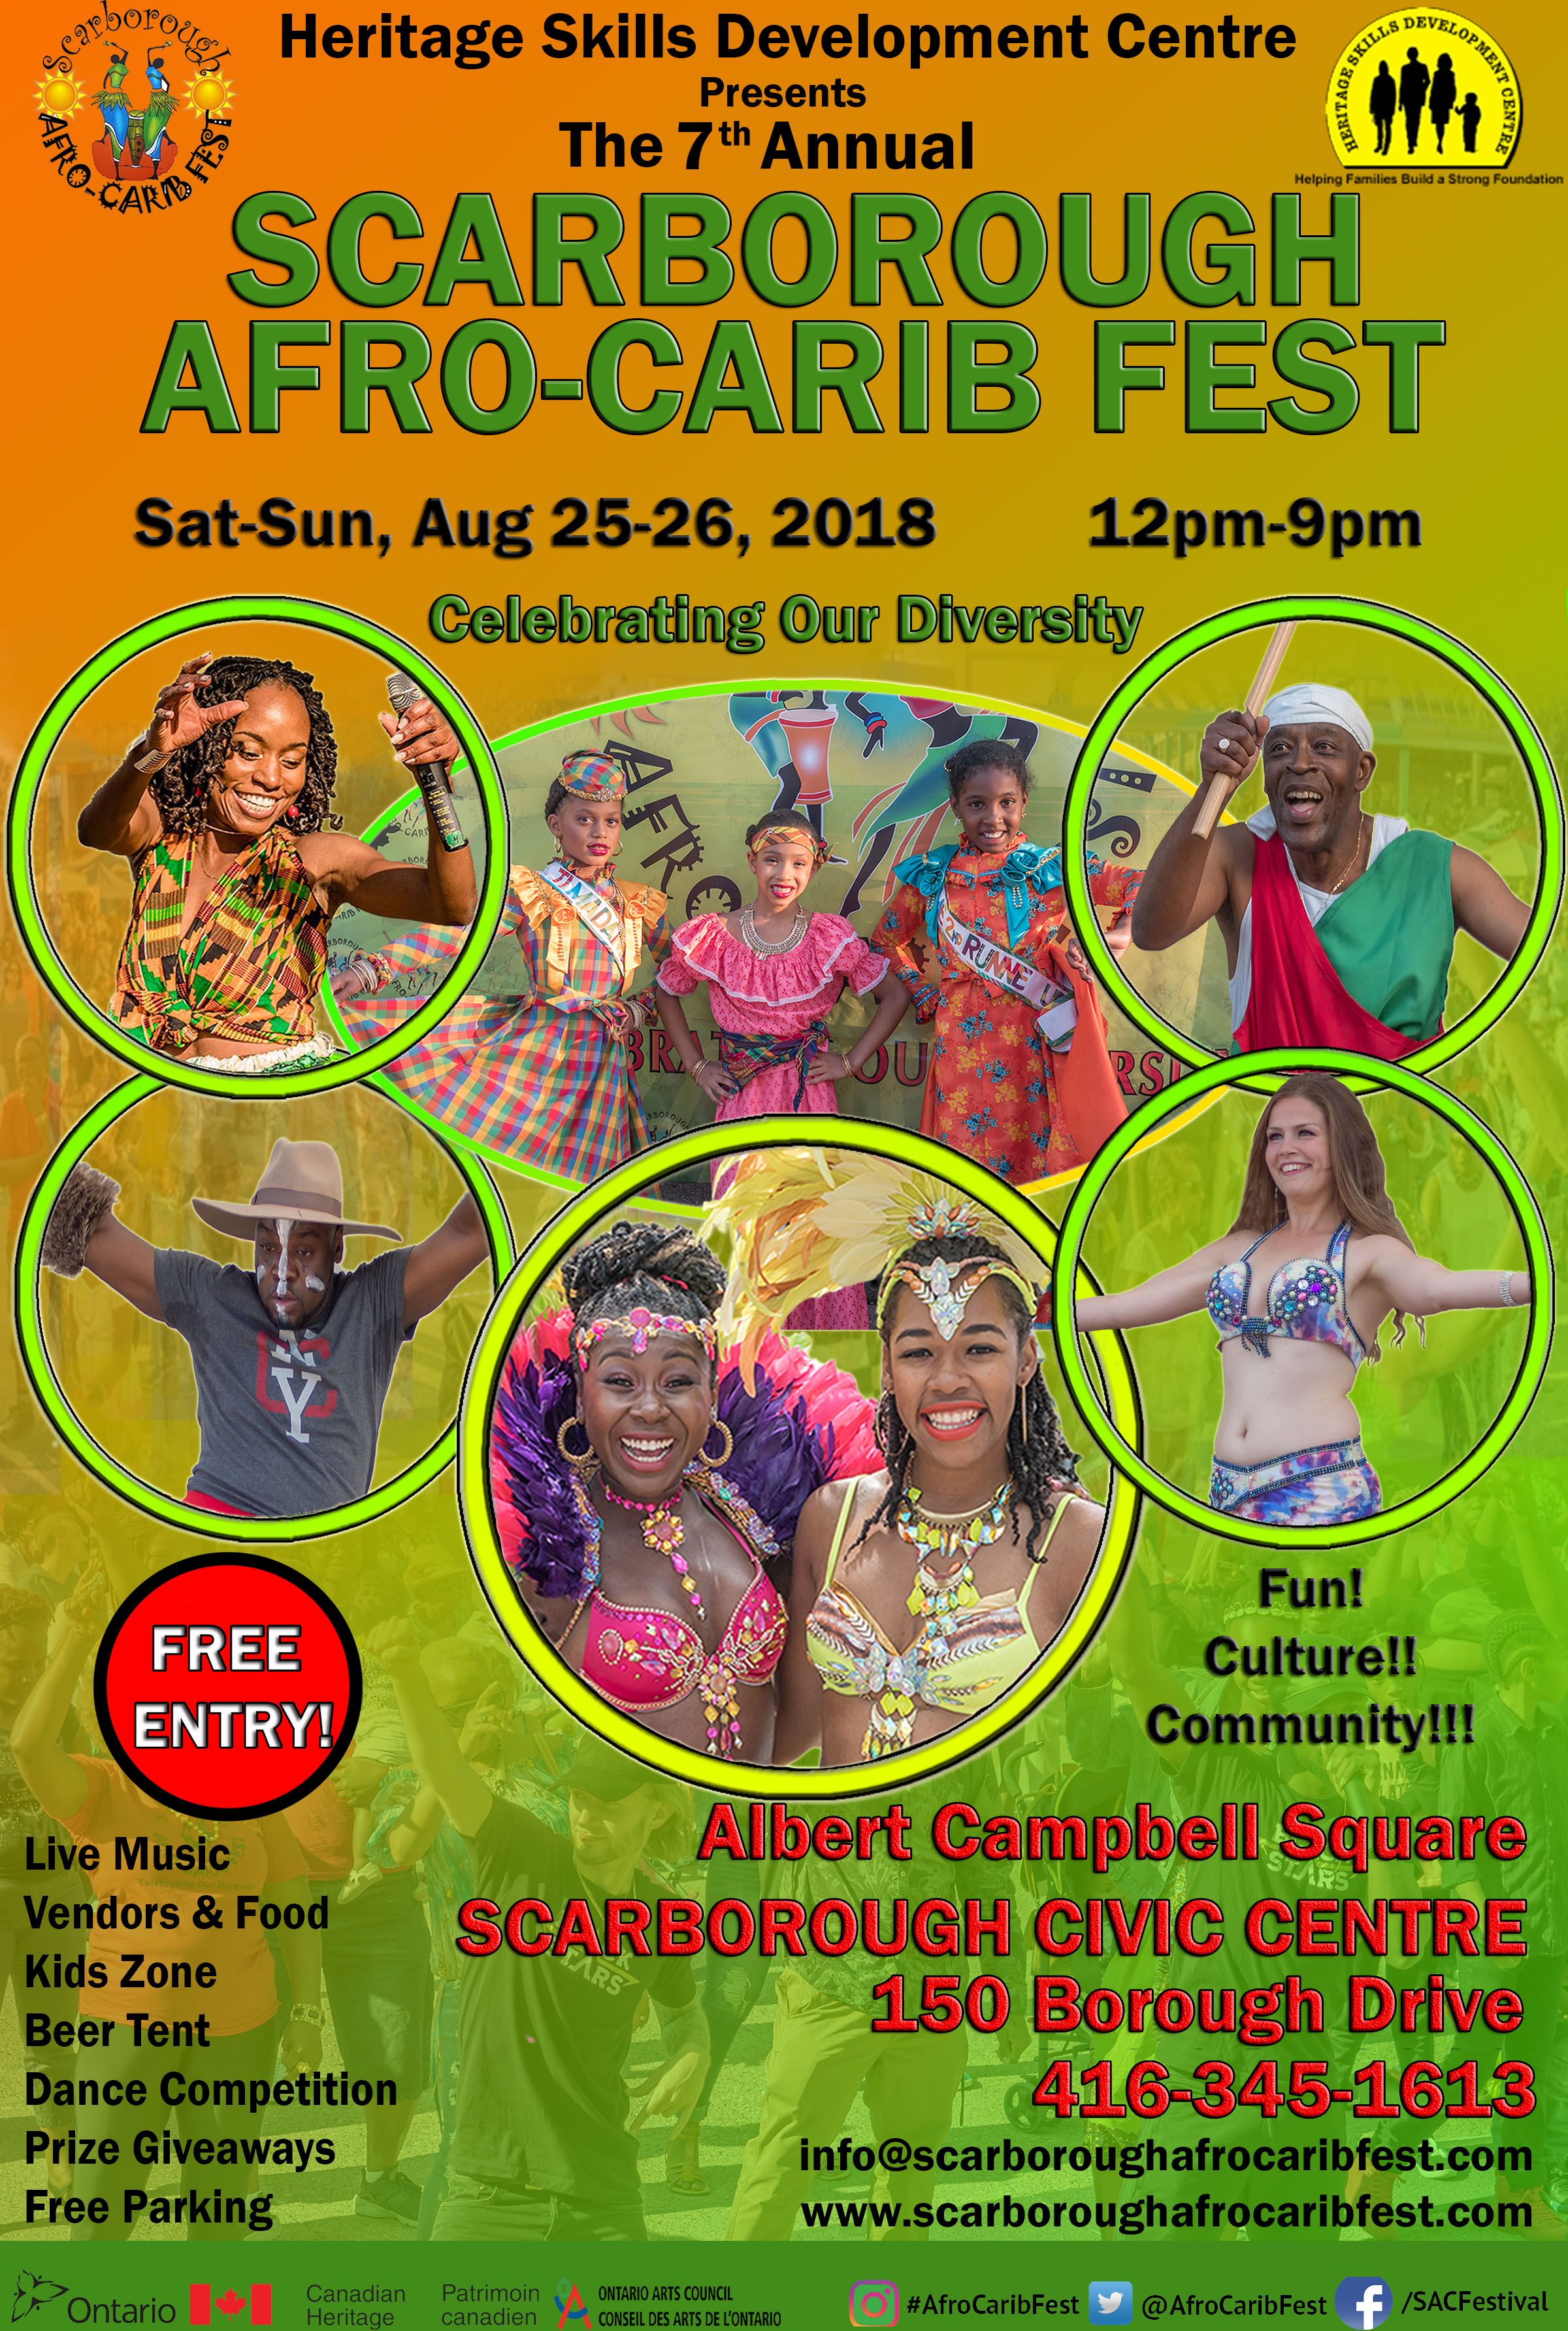 SCARBOROUGH AFRO-CARIB FEST